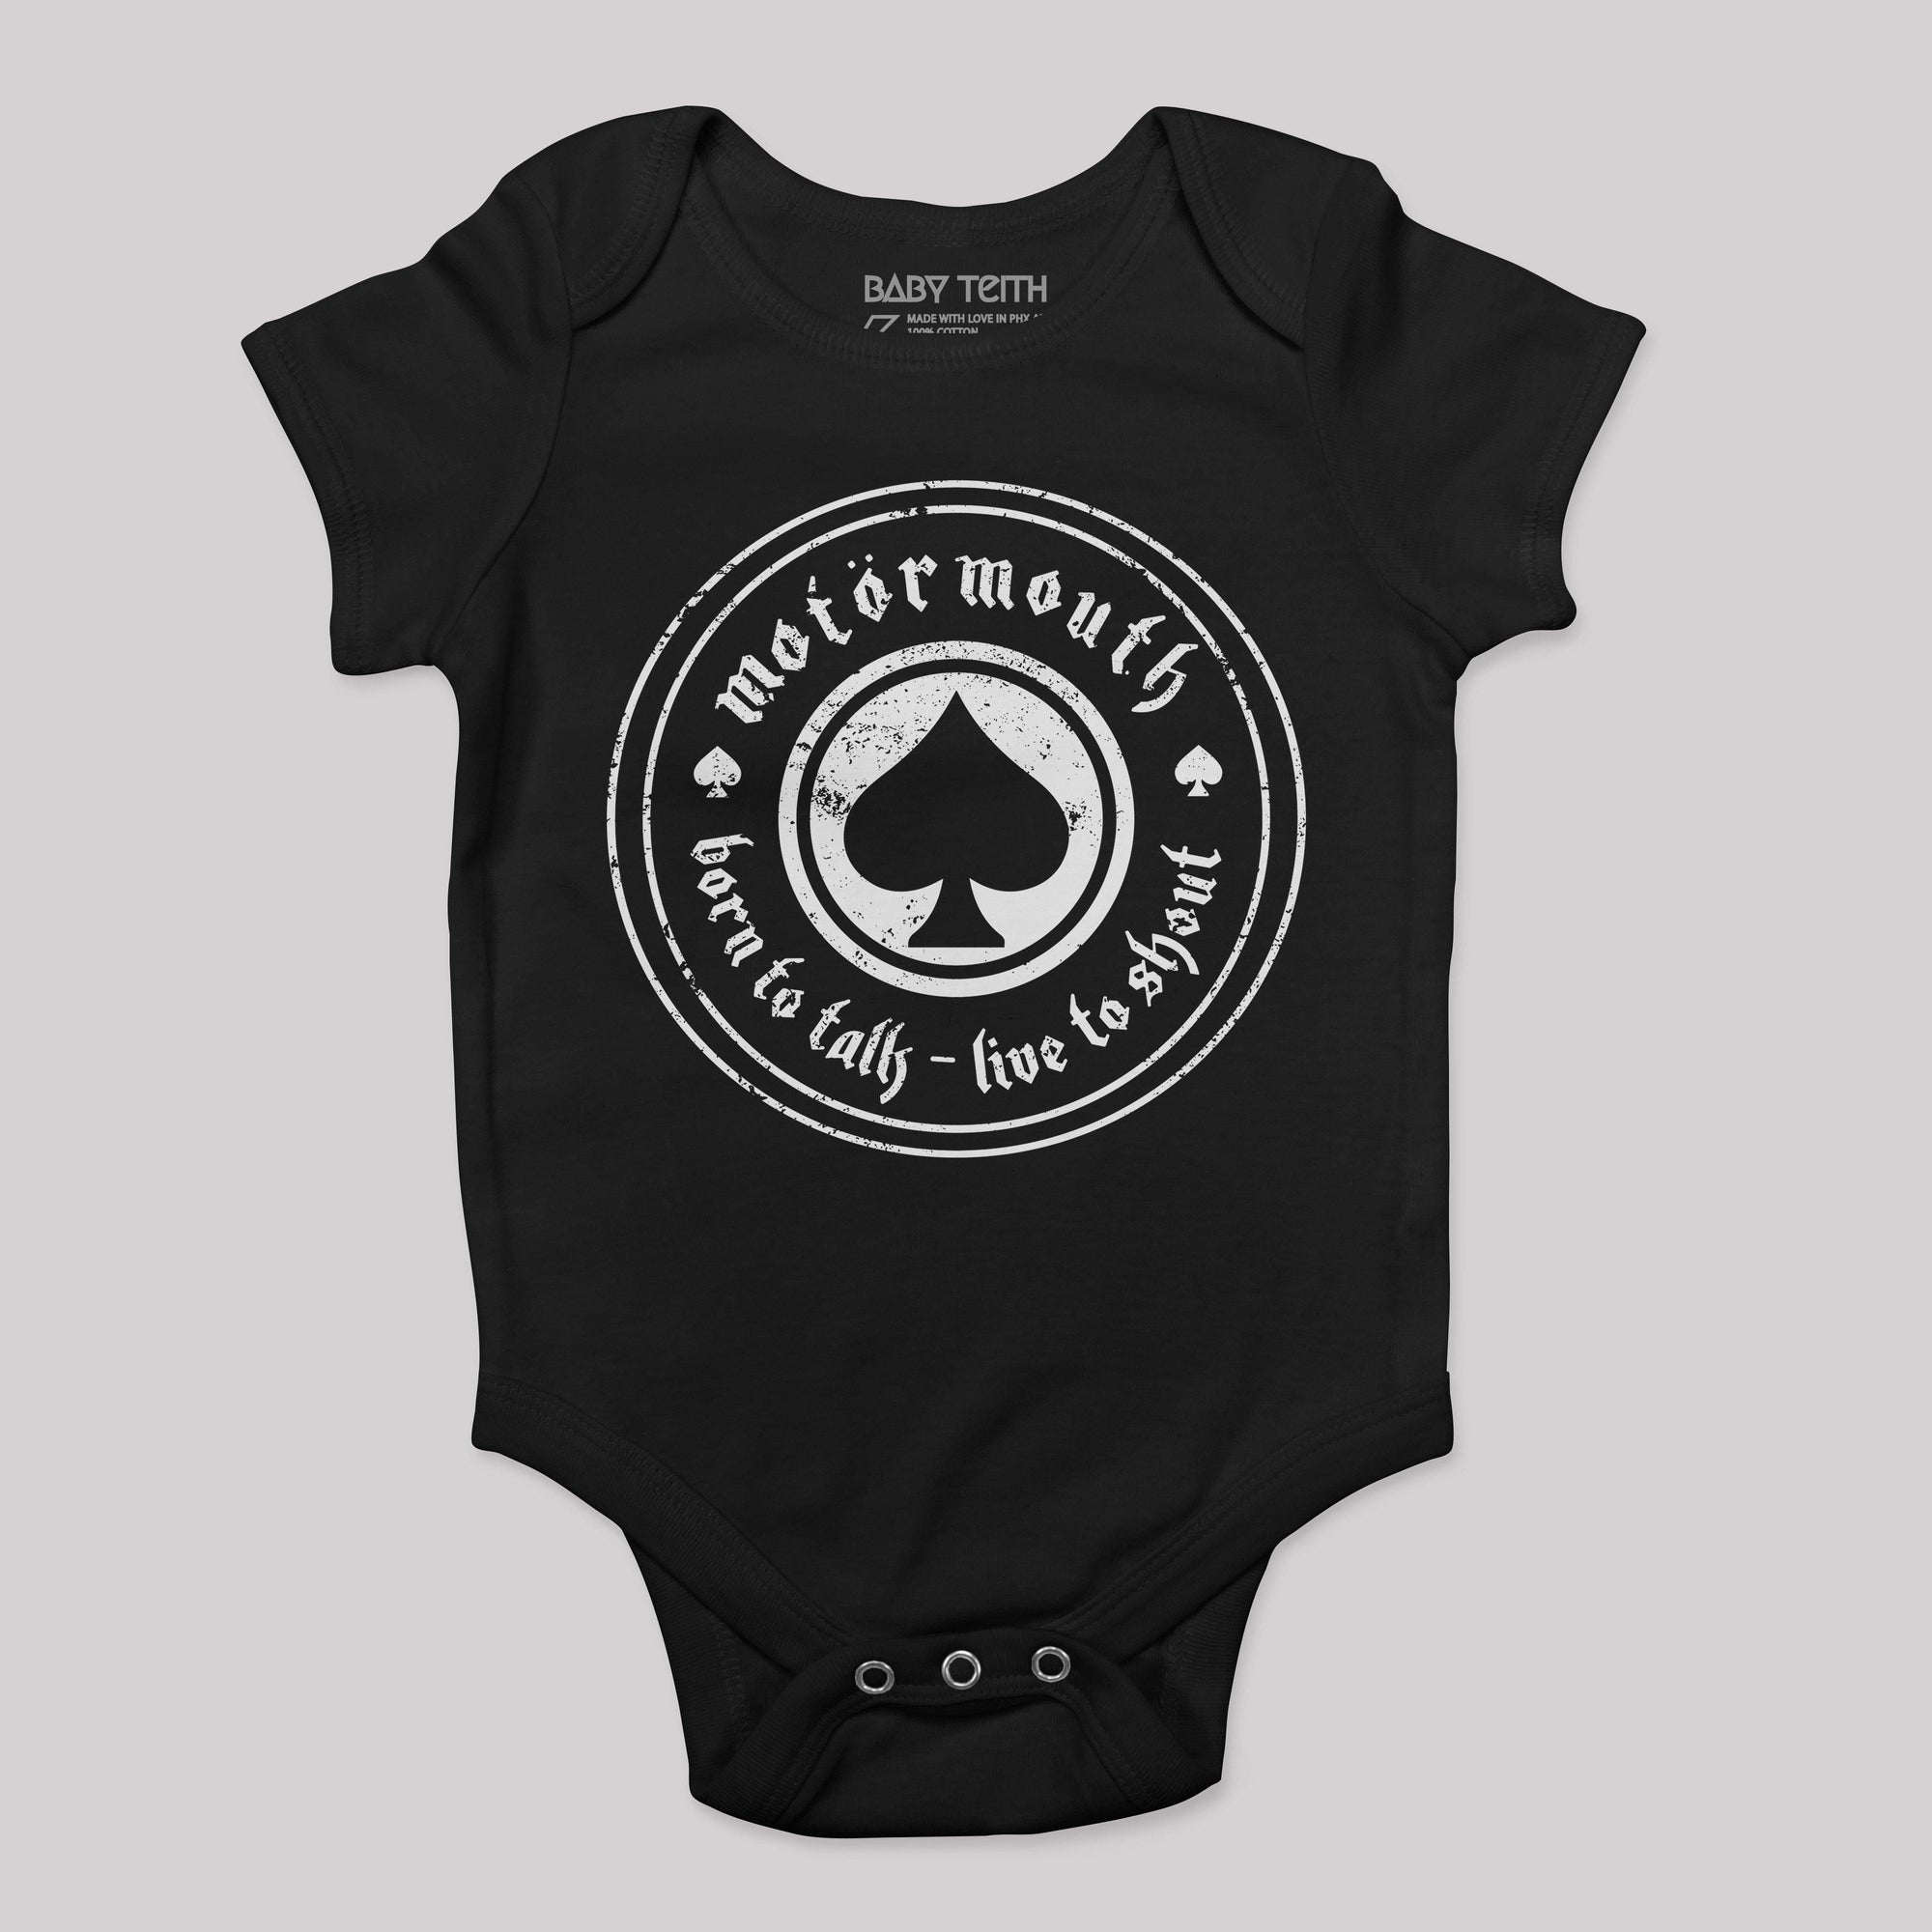 "Motörmouth" Bodysuit for Babies - Baby Teith